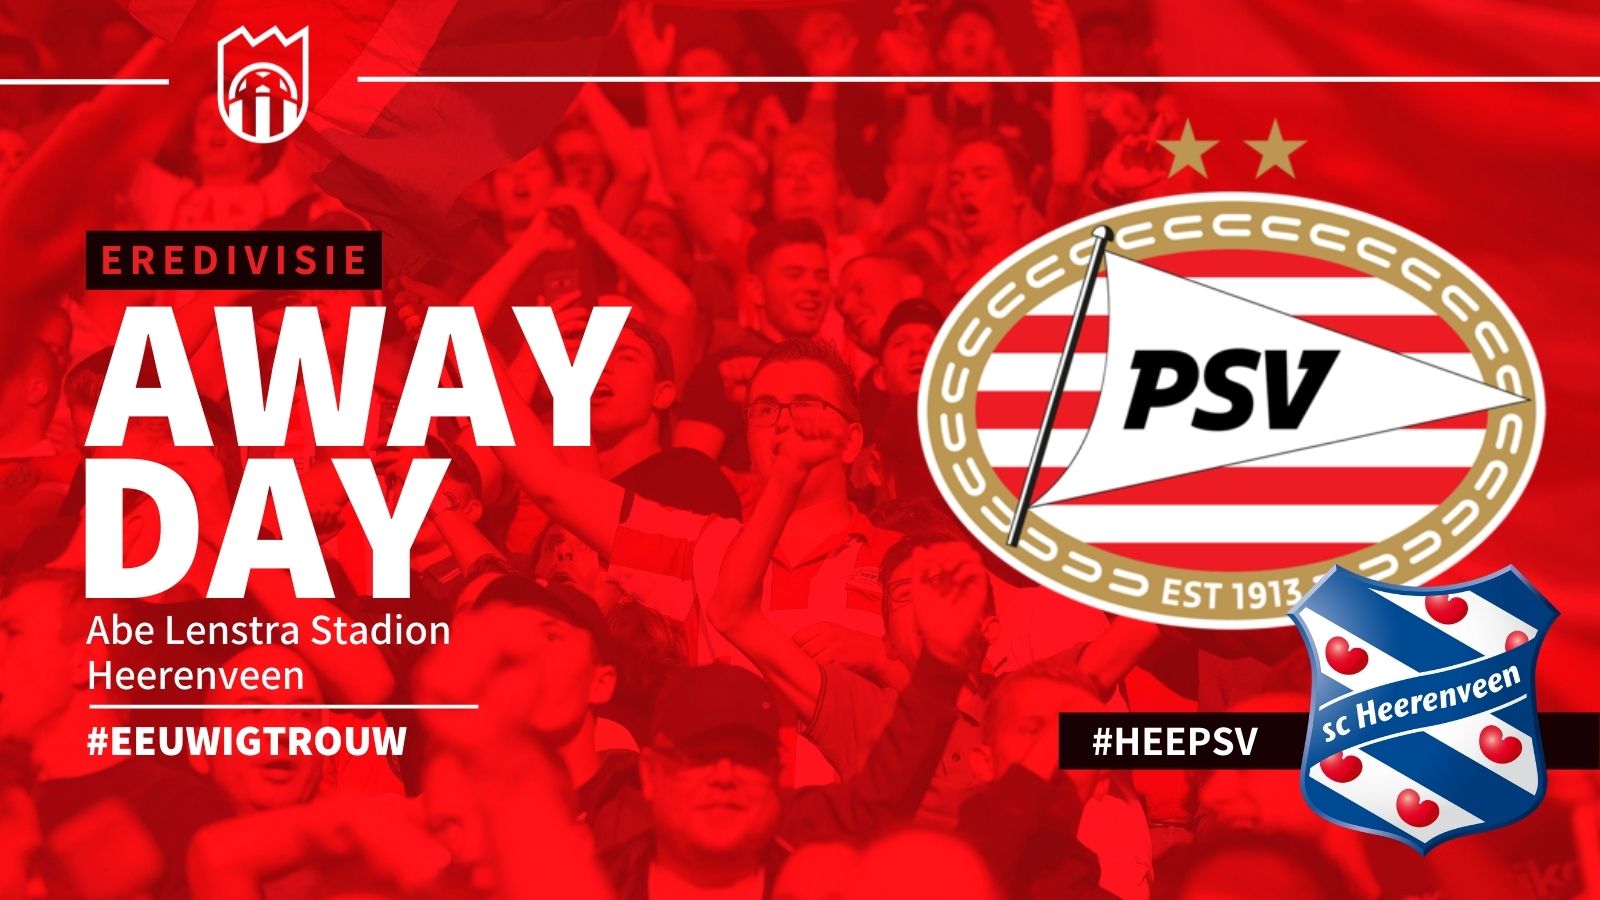 Eredivisie : sc Heerenveen - PSV (1 - 1)